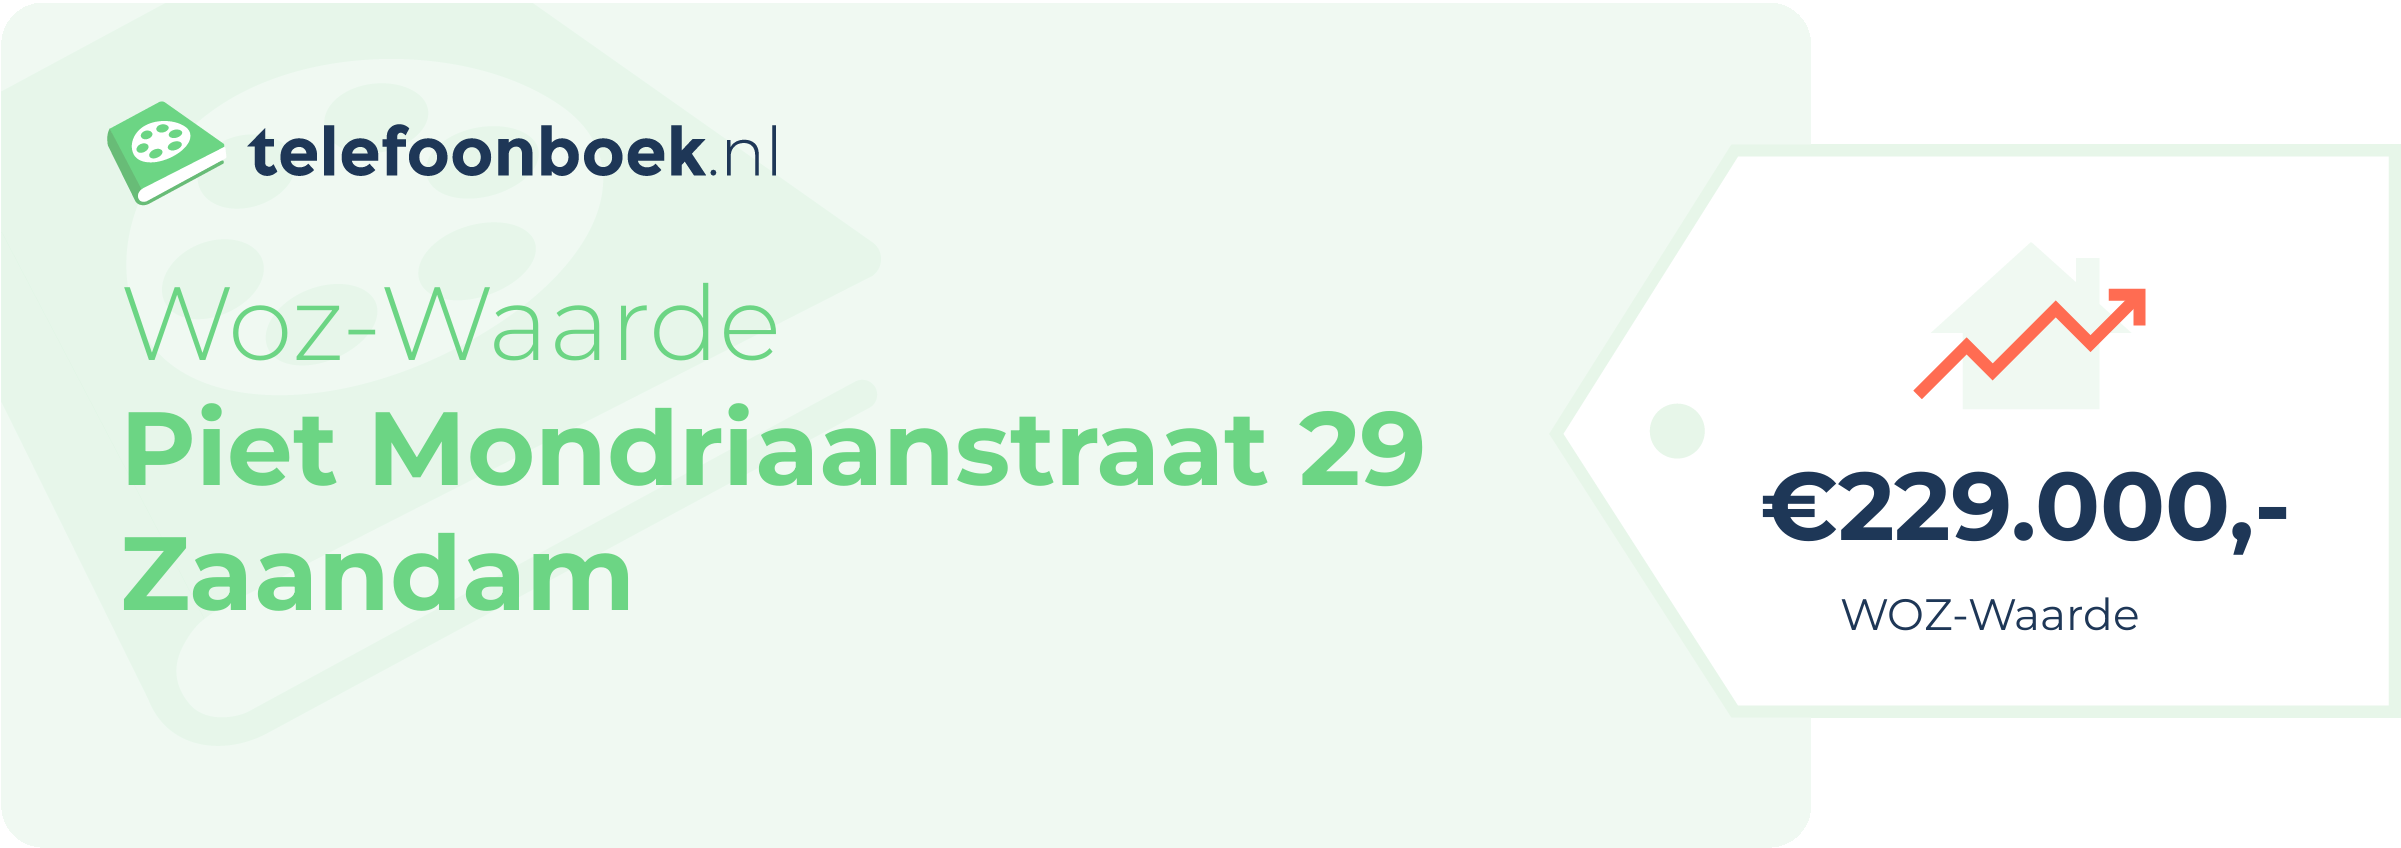 WOZ-waarde Piet Mondriaanstraat 29 Zaandam